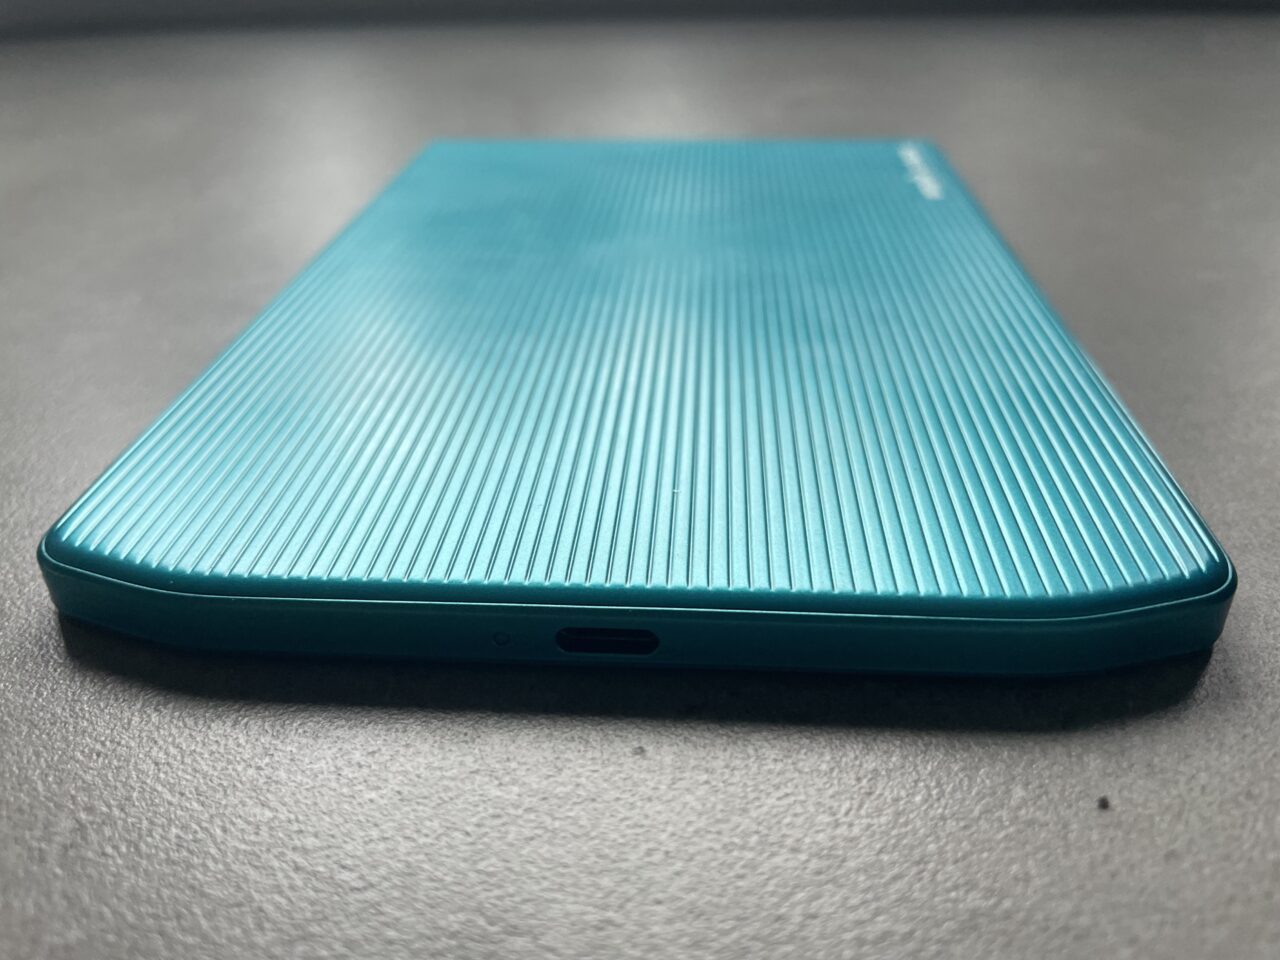 Niebieski smartfon z teksturowanym tylnym panelem, skierowany ekranem do dołu, leżący na szarym blacie.